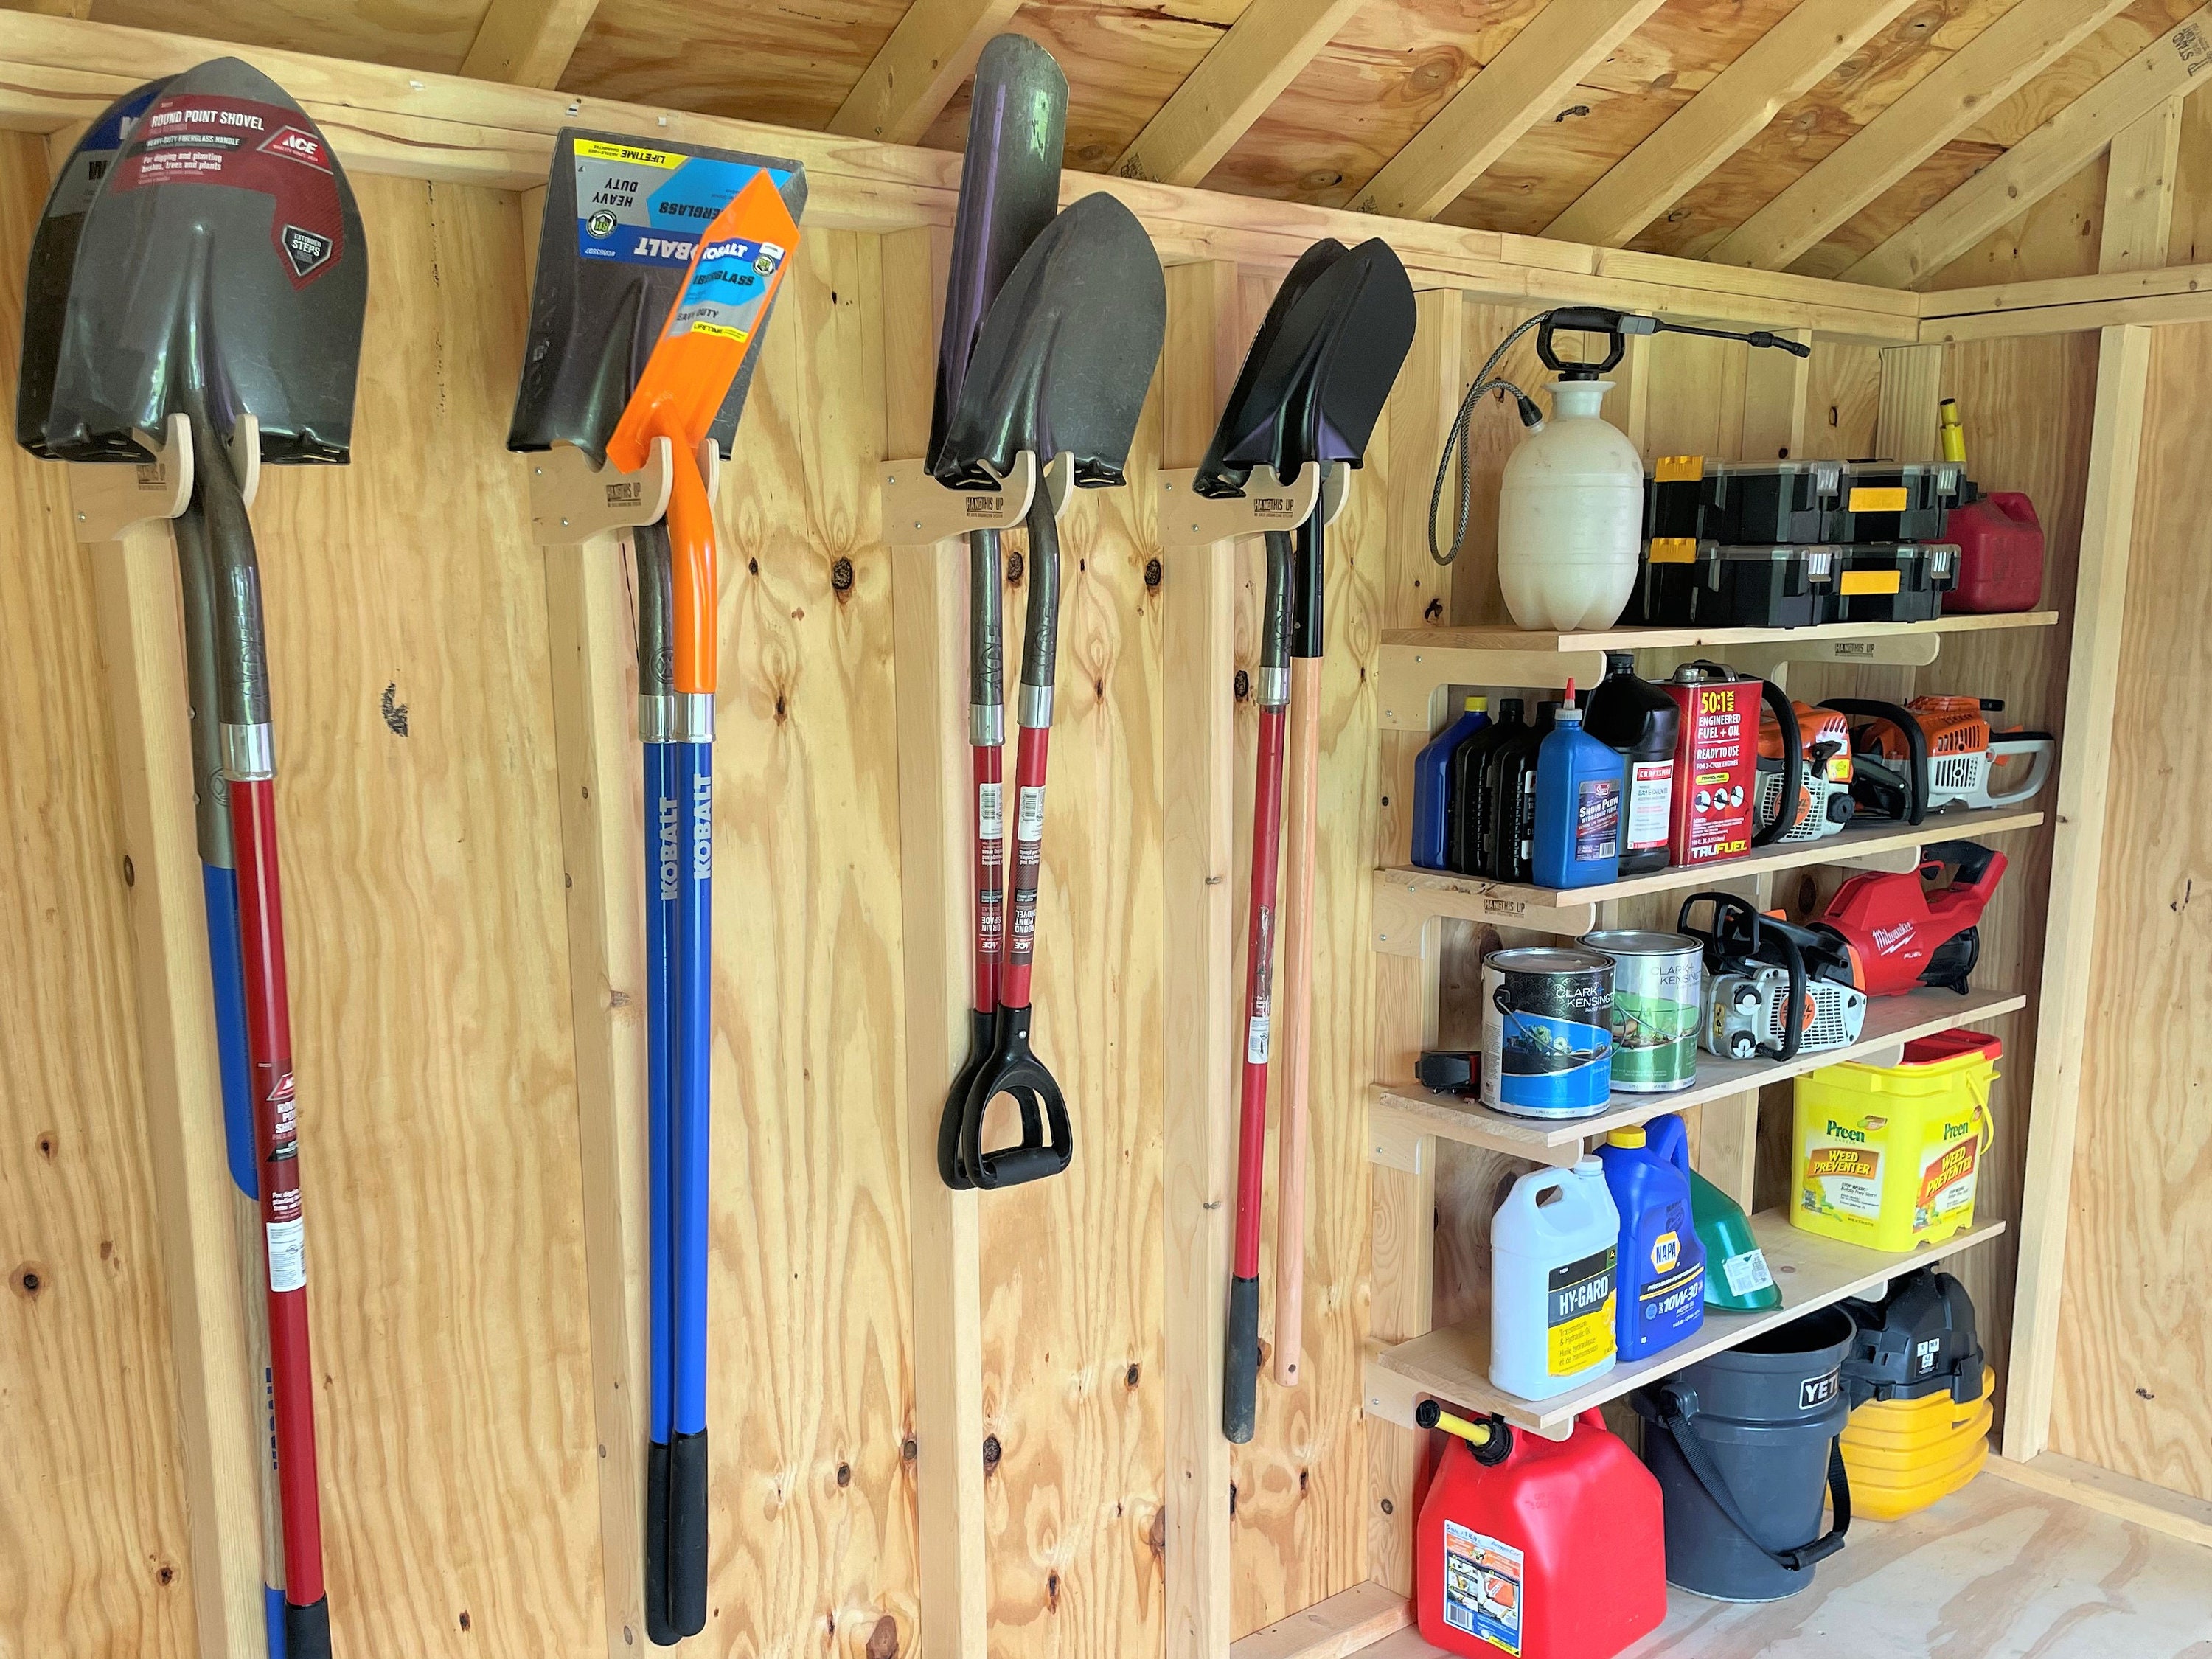 Range-outils de jardin : casiers, armoires et abris pour vos outils - Cour  et Jardin